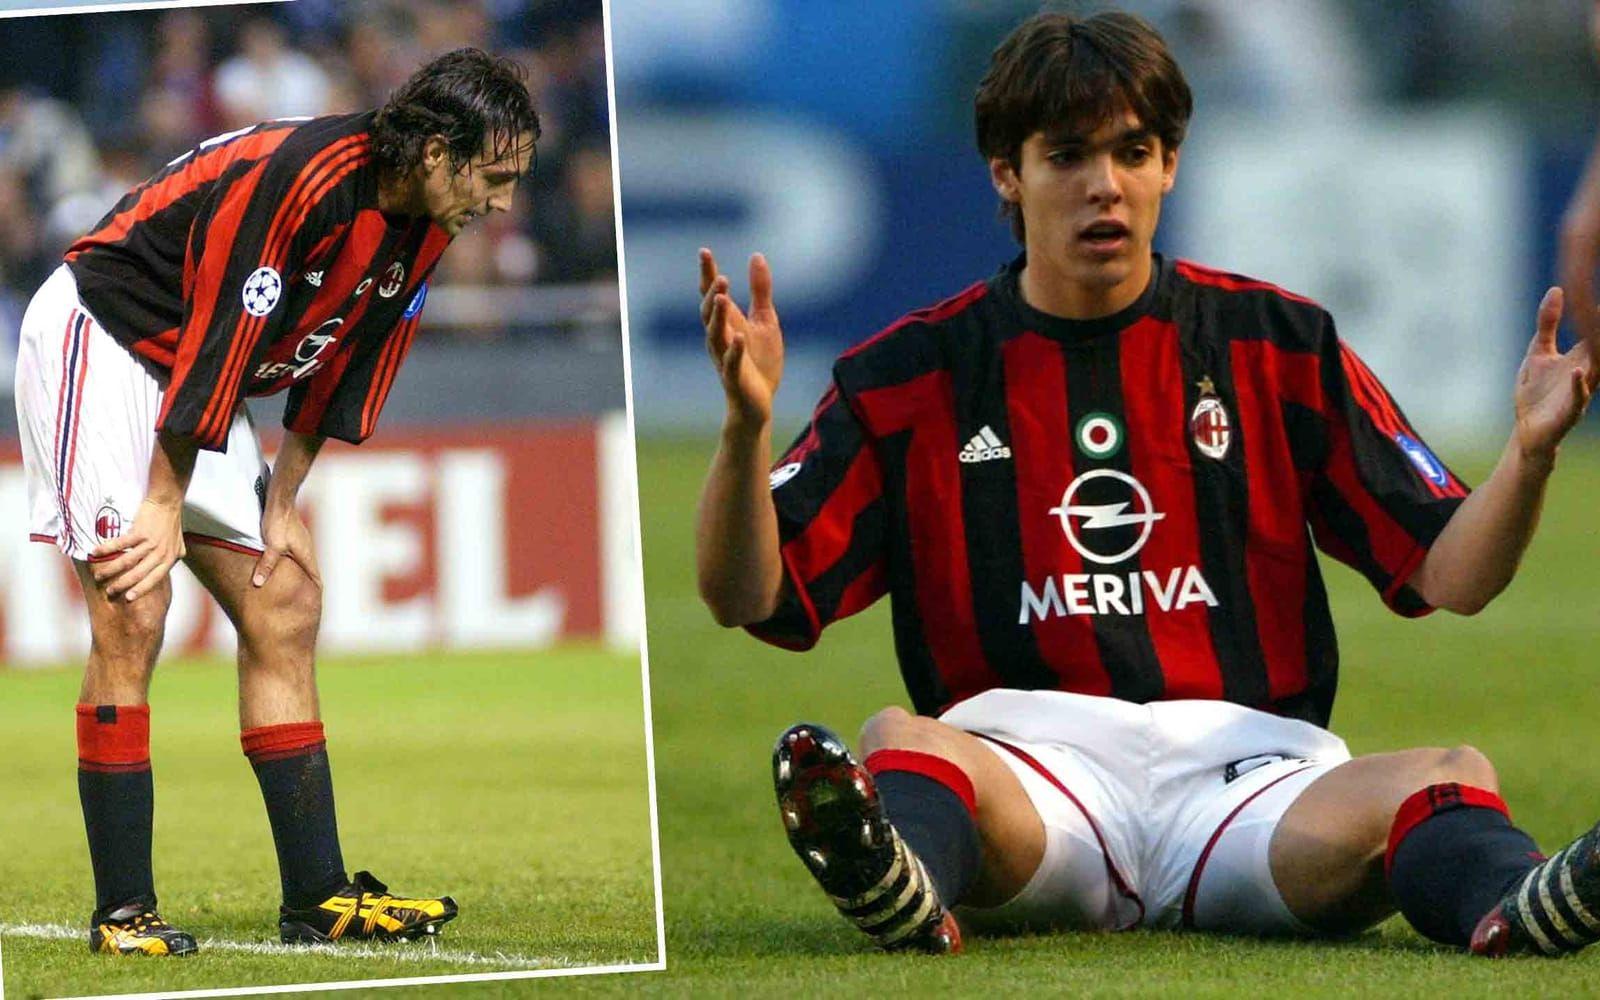 På mitten av 2000-talet var Milan ett av Europas bästa lag, med stjärnor som Alessandro Nesta och Kaká i startelvan. Men Deportivo La Coruna visade att det går att vända ett till synes omöjligt underläge – trots att motståndet håller allra högsta klass. Foto: TT